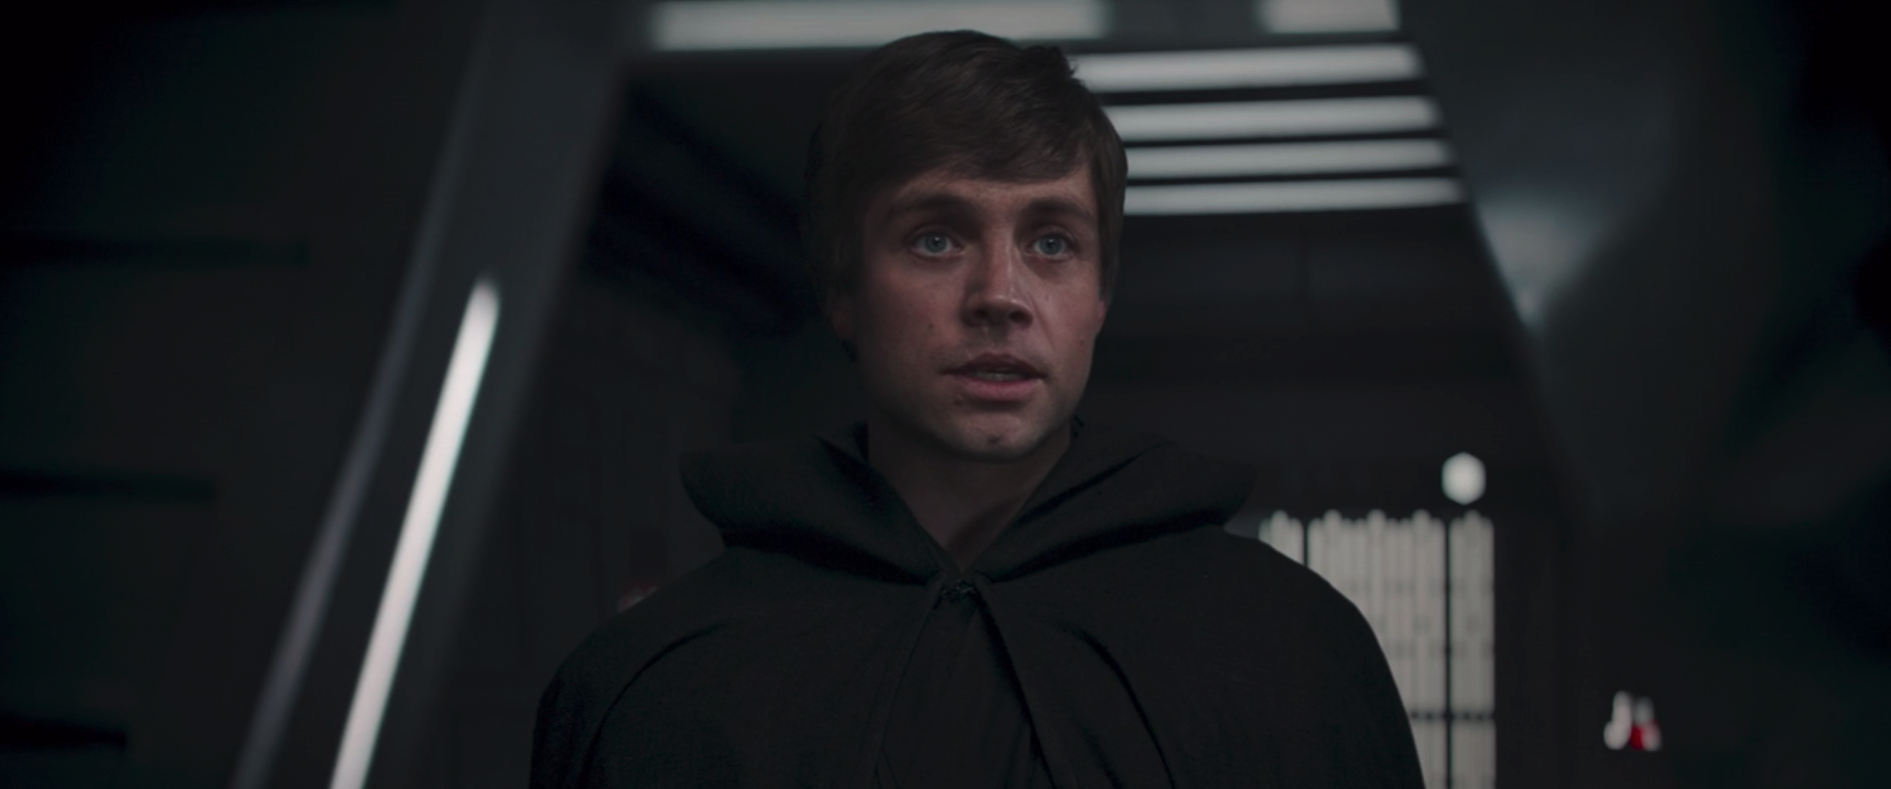 Return of the Jedi-era Luke Skywalker appears on The Mandalorian